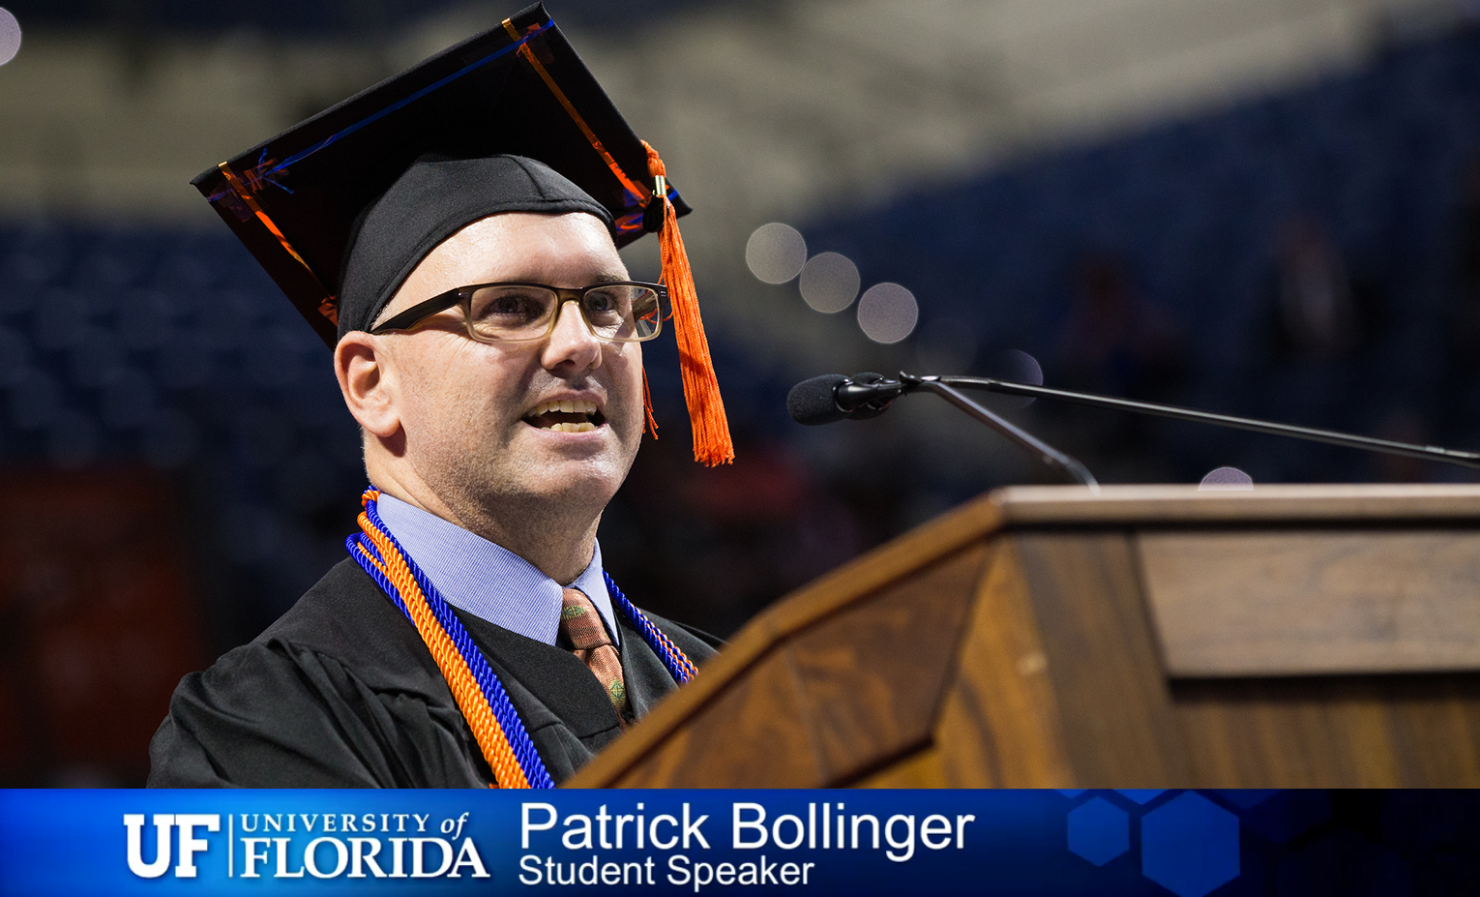 Student Speaker Patrick Bollinger